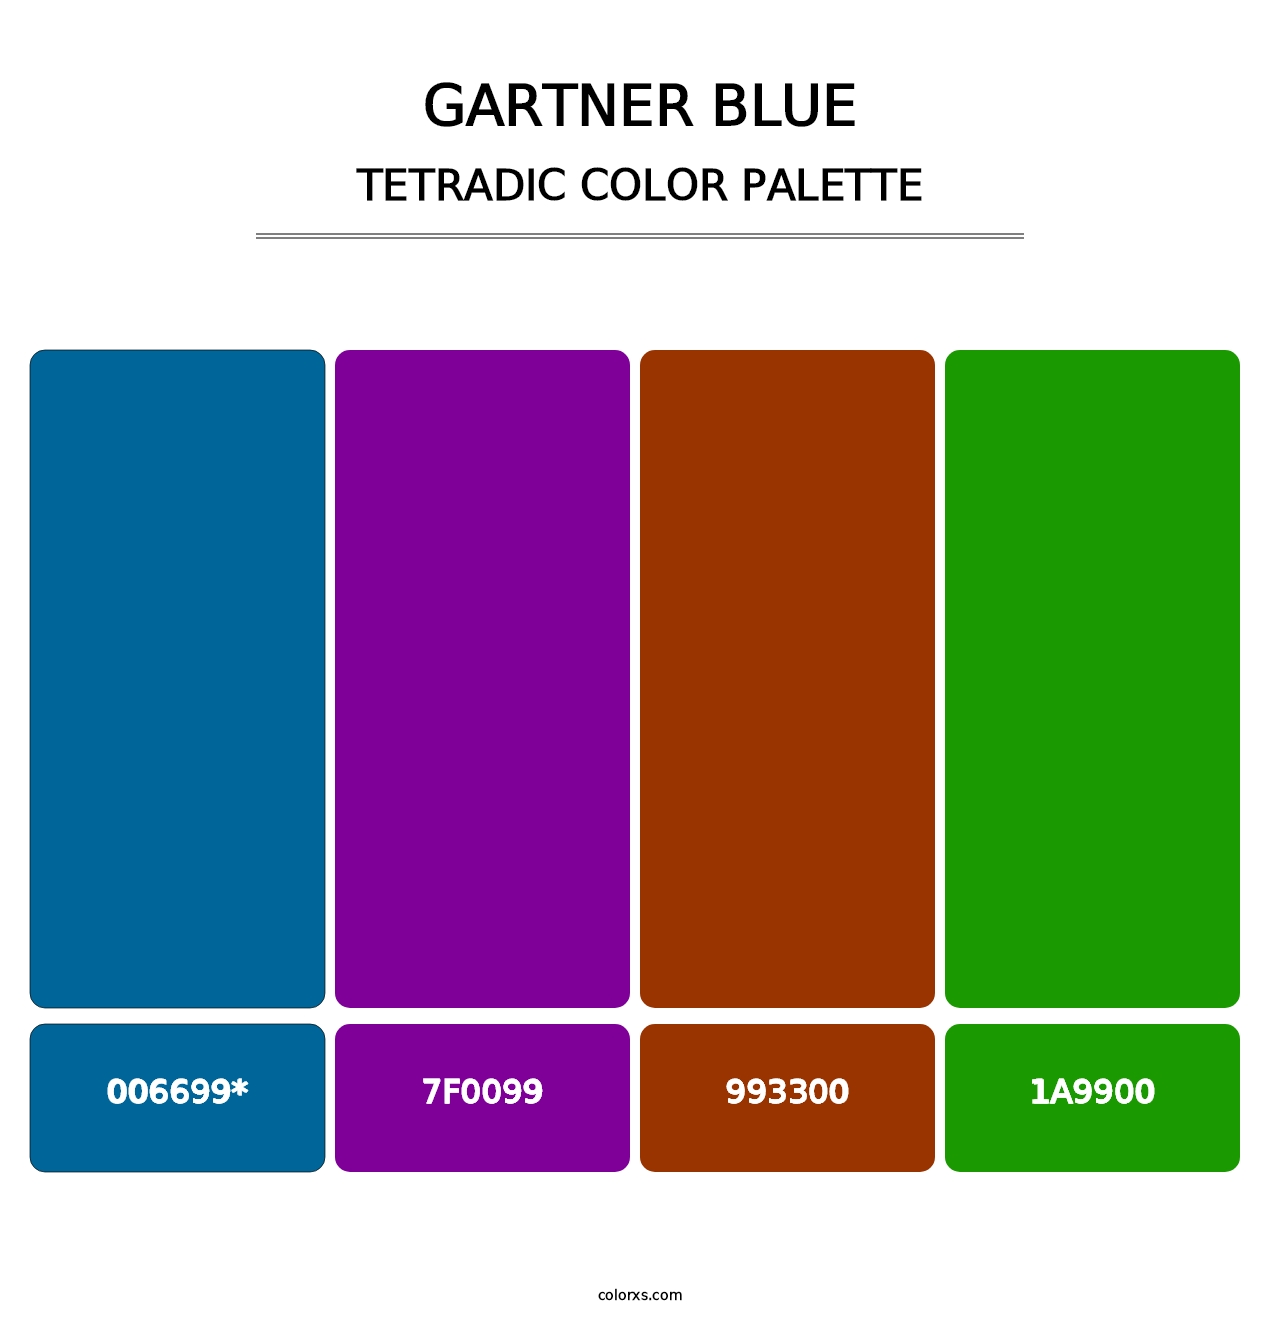 Gartner Blue - Tetradic Color Palette